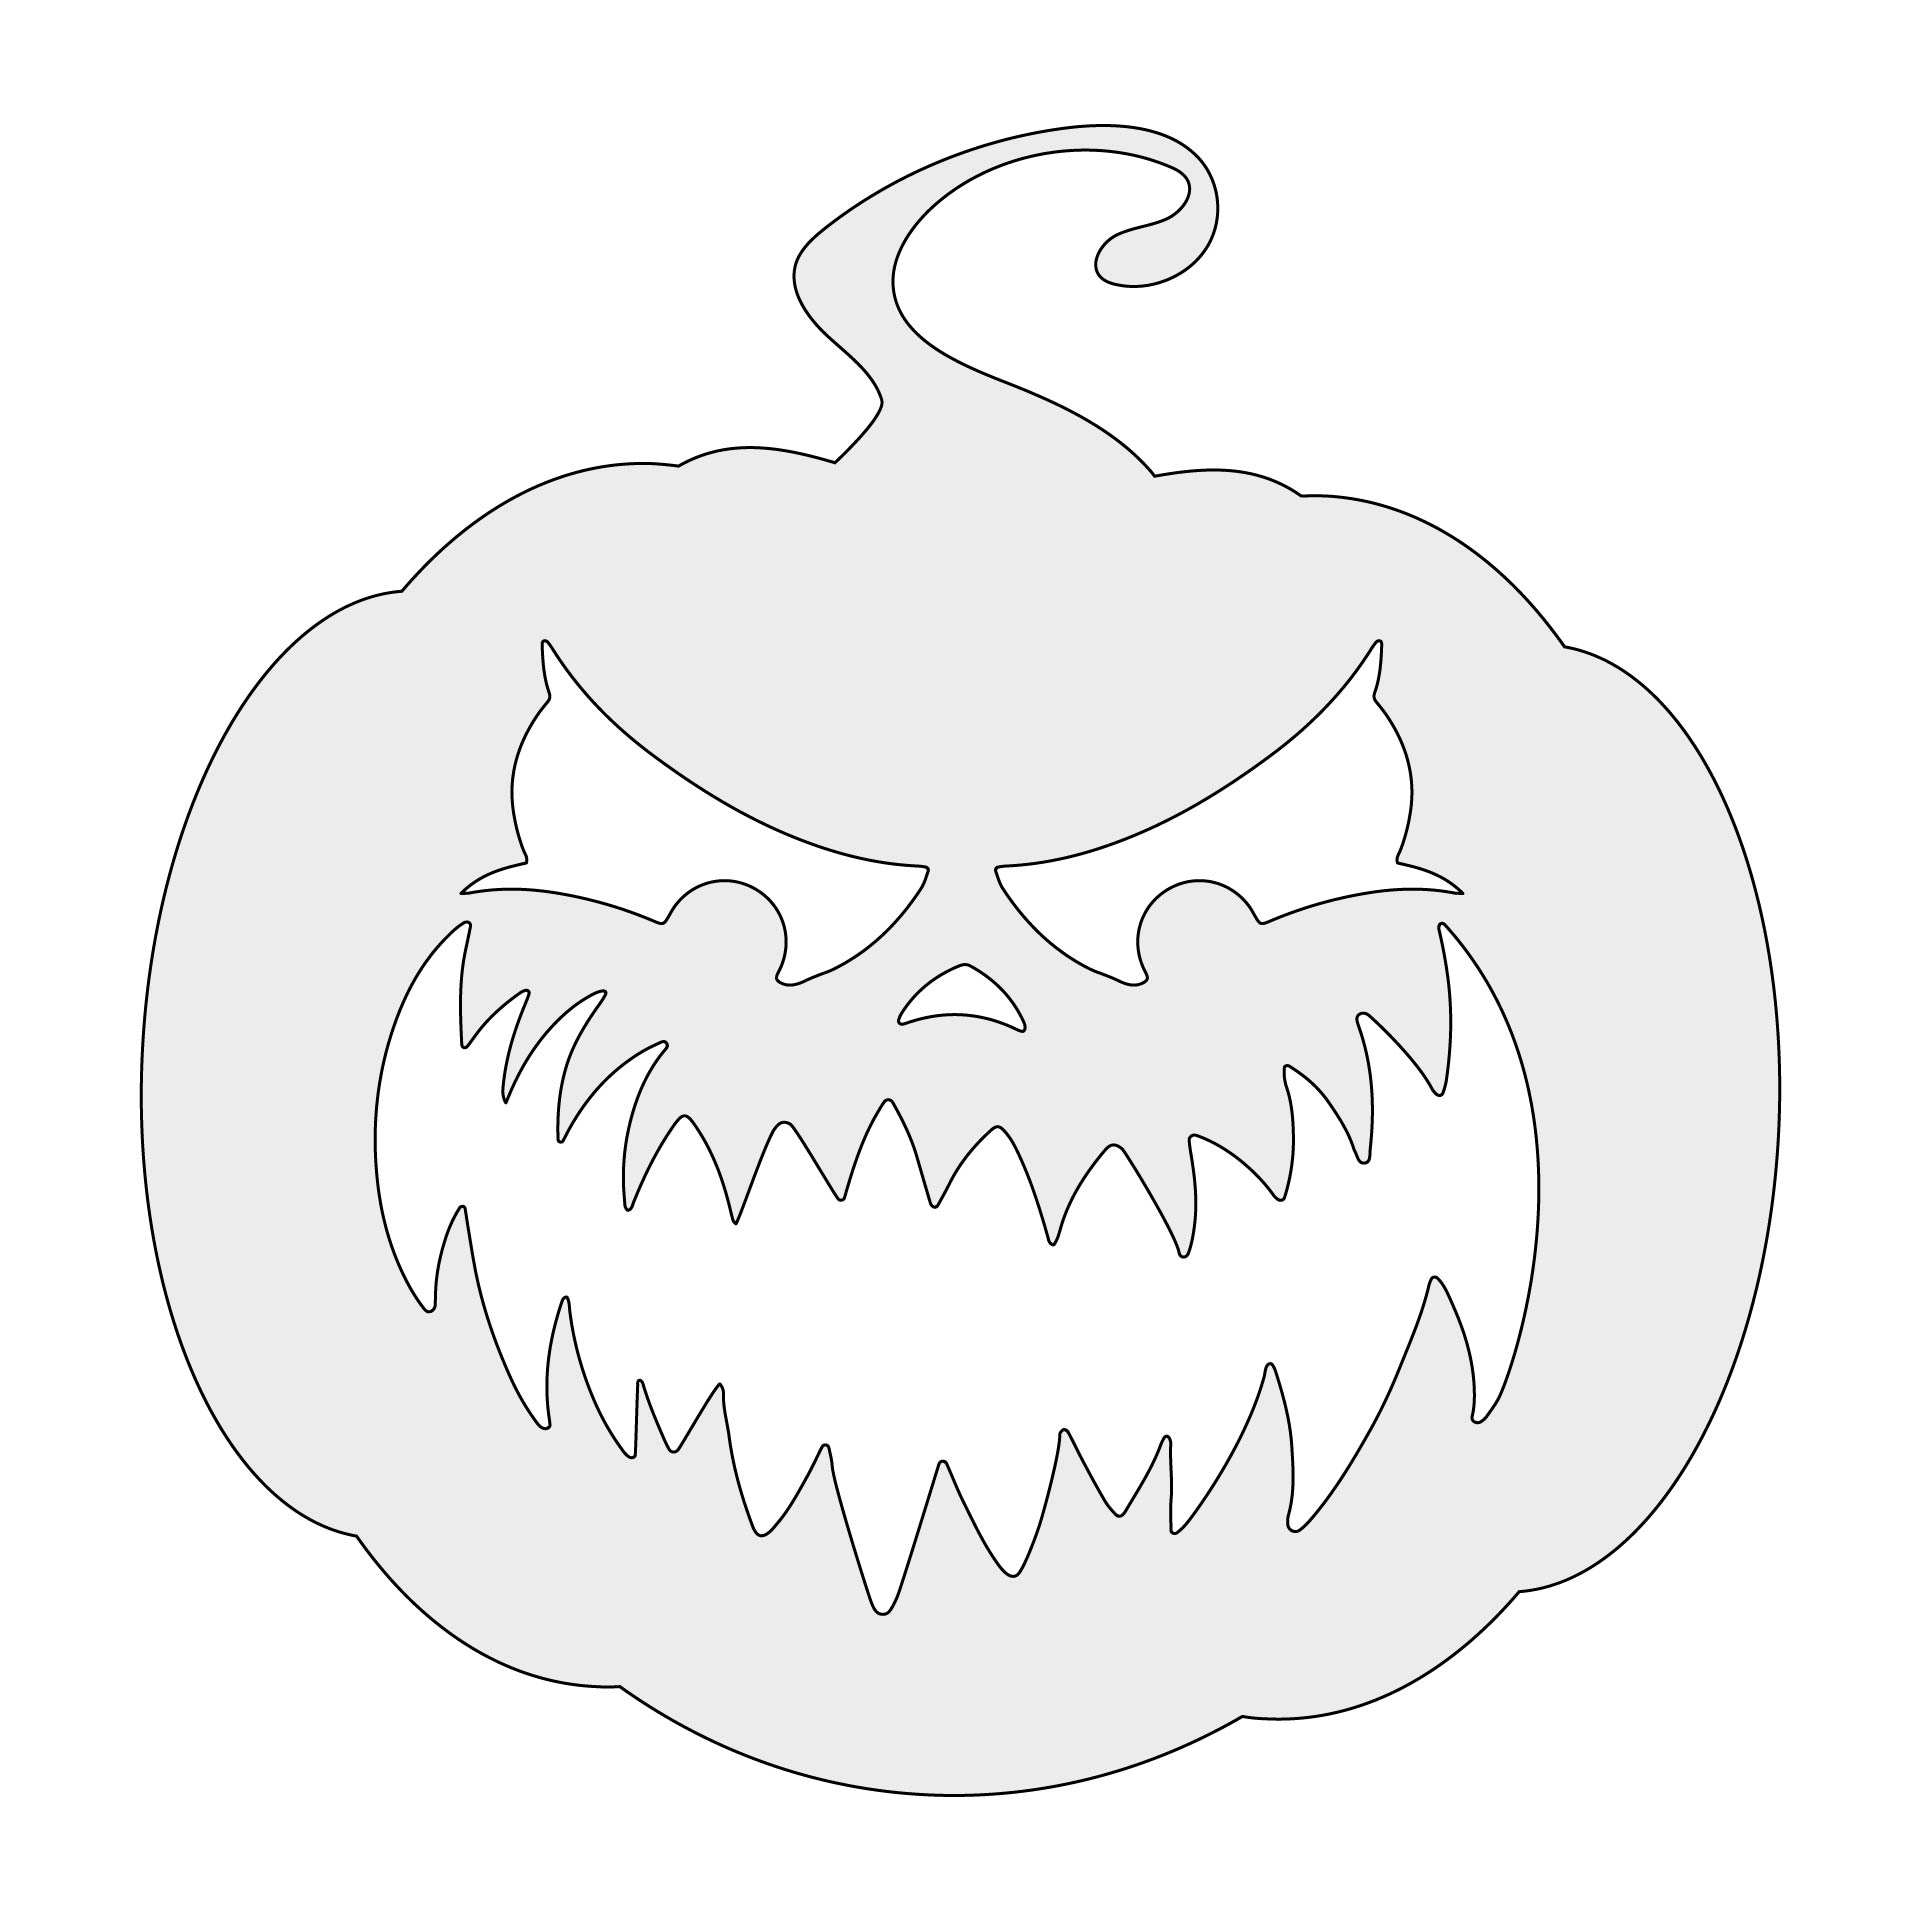 15 Best Free Printable Halloween Designs PDF for Free at Printablee